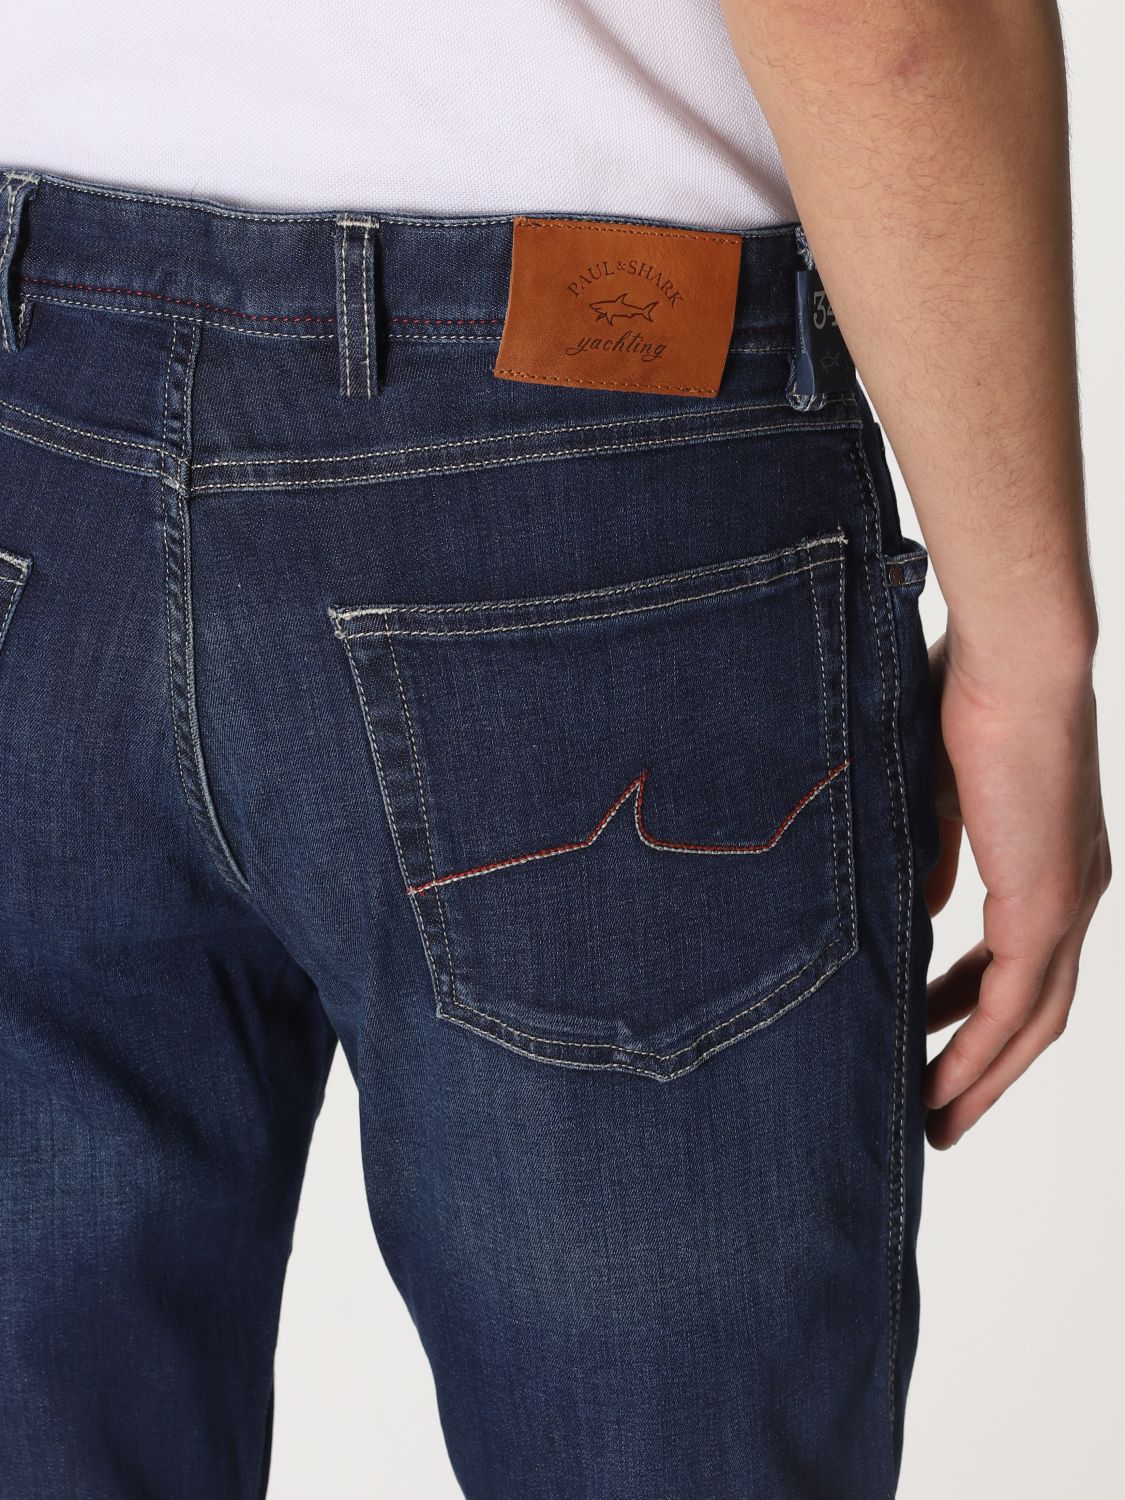 PAUL & SHARK: 5-pocket jeans - Denim | Jeans Paul & Shark P19P4020 ...